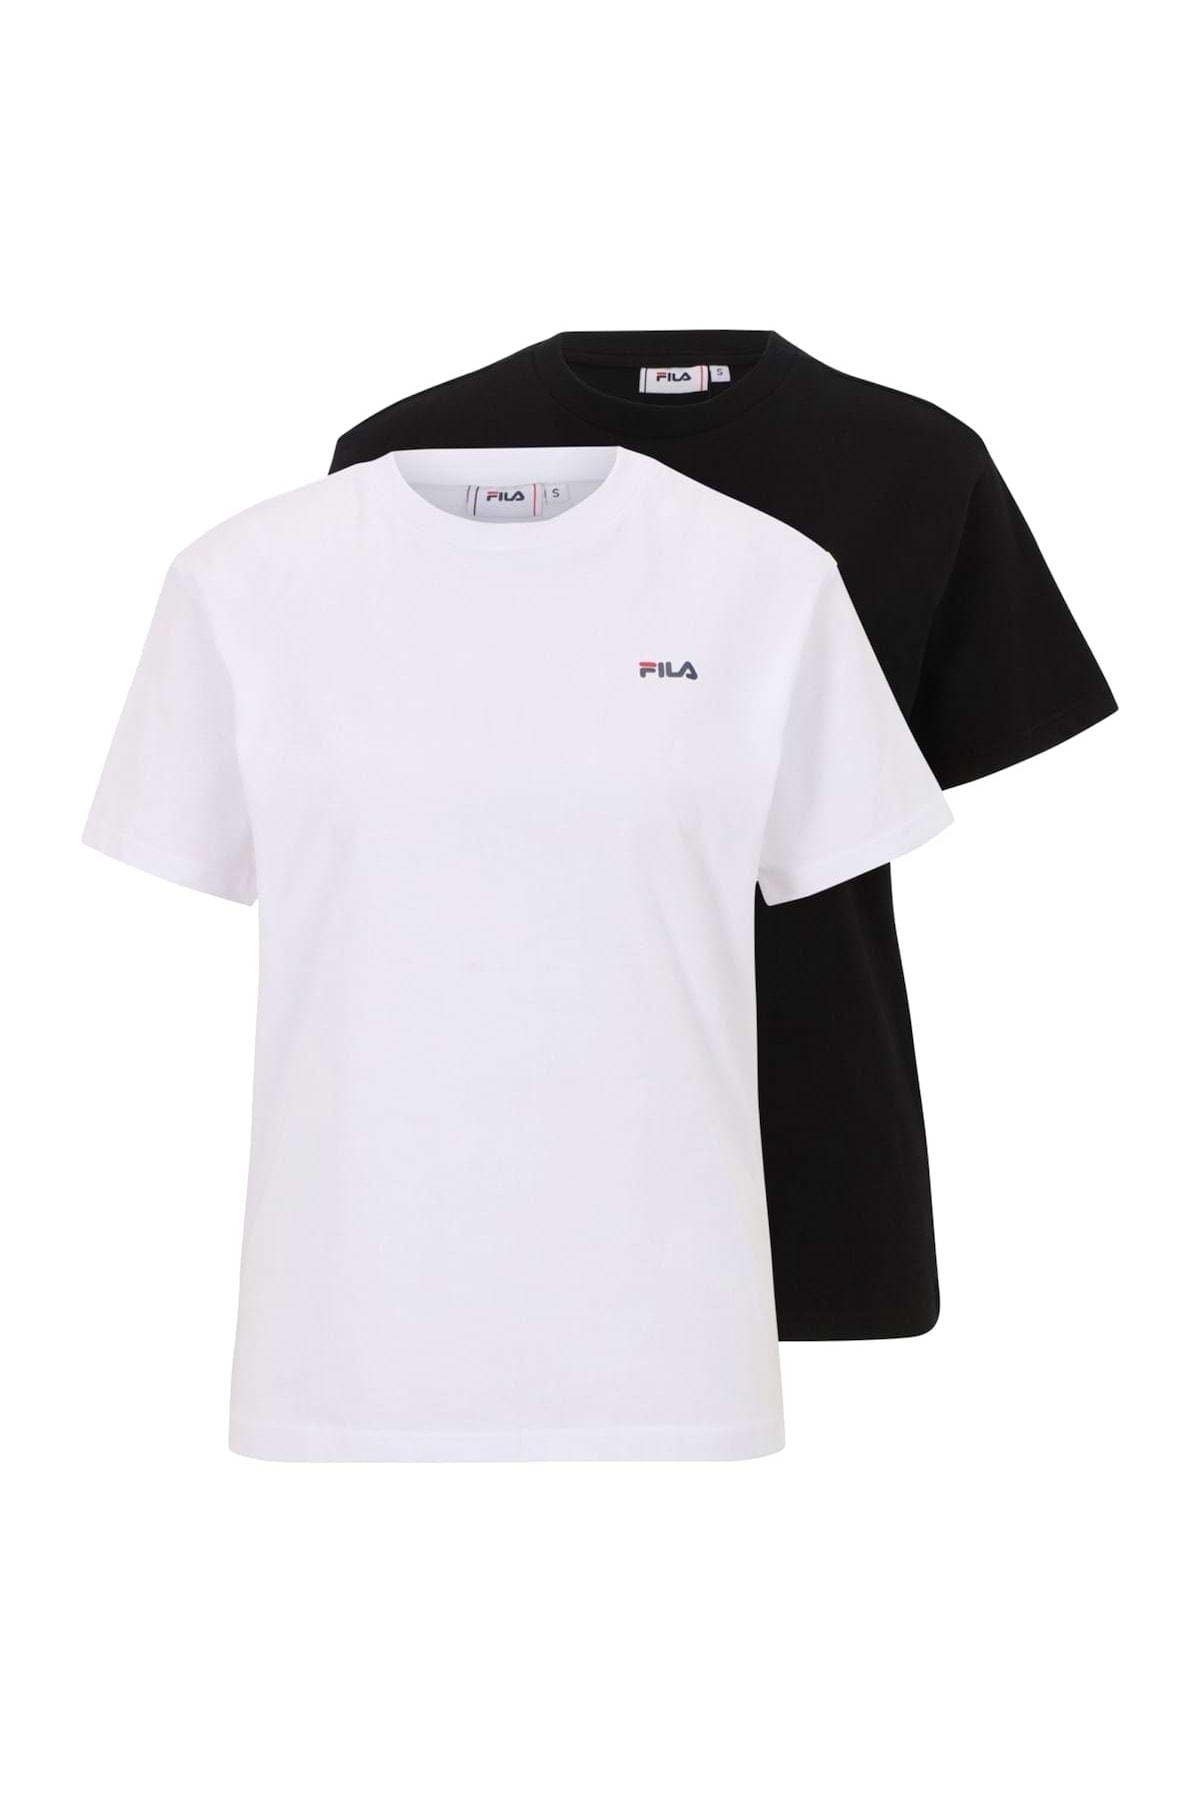 FILA T-Shirt Weiß Regular Fit Fast ausverkauft